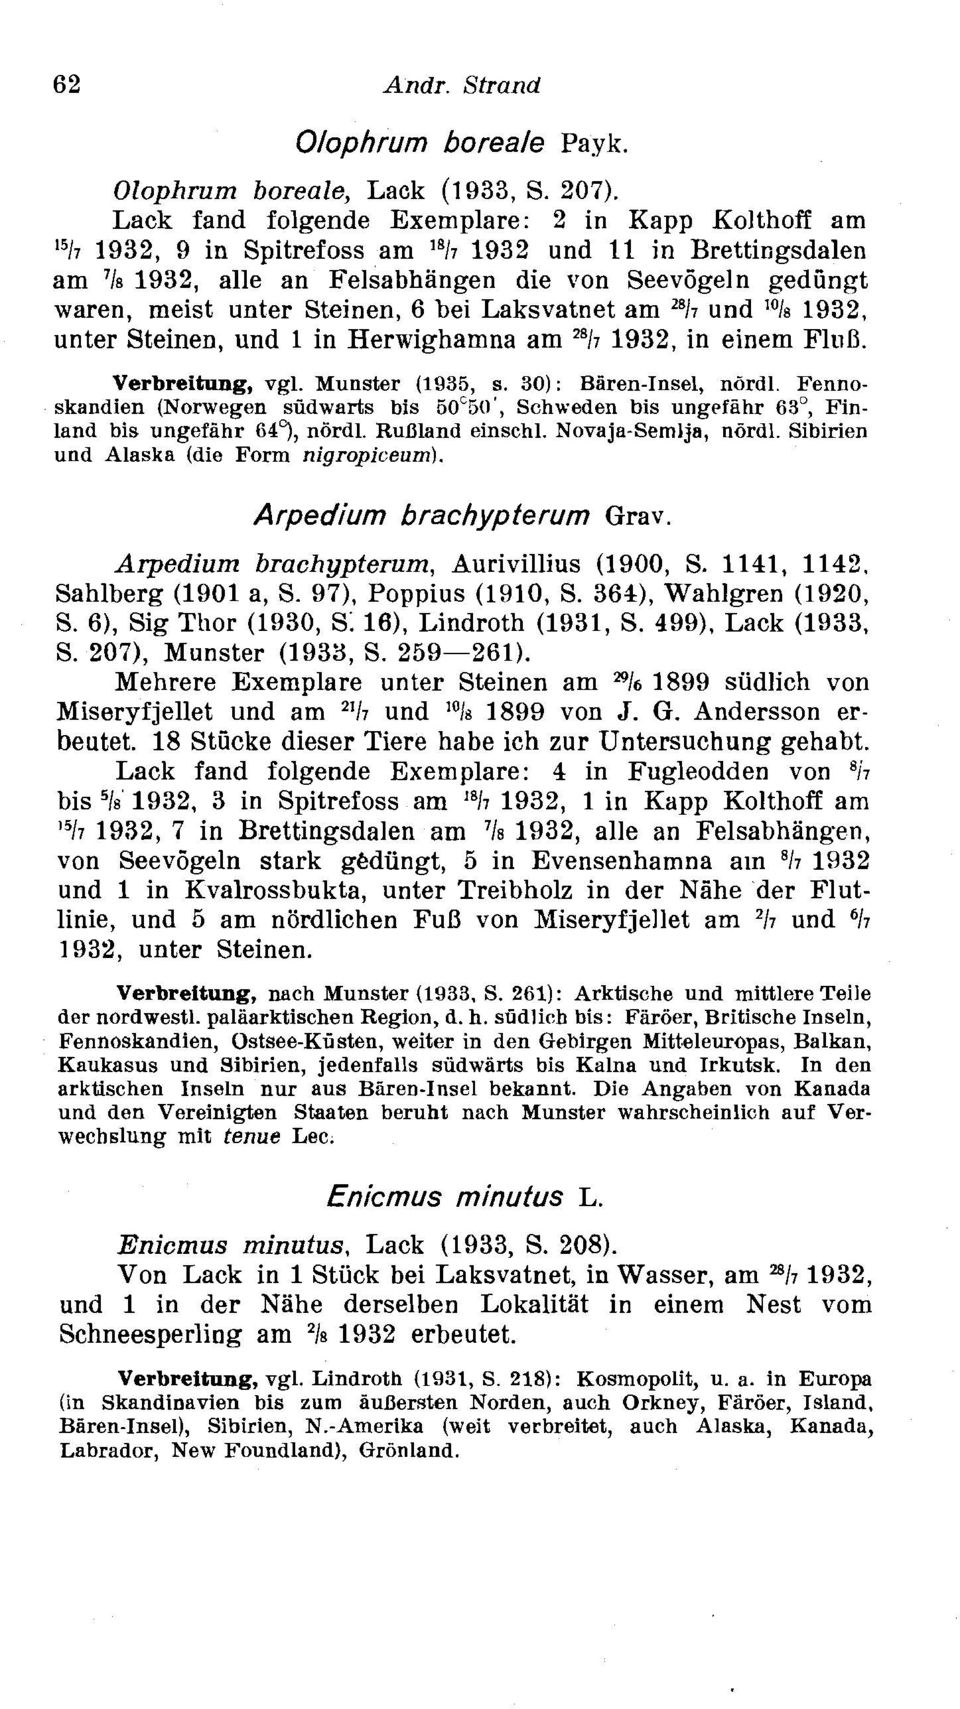 Steinen, 6 bei Laksvatnet am "17 und 'Ole 1932, unter Steinen, und 1 in Herwighamna am "17 1932, in einem FltiD. Verbreitung, vgl. Munster (1935, s. 3): Blren-Insel, ndrdl.